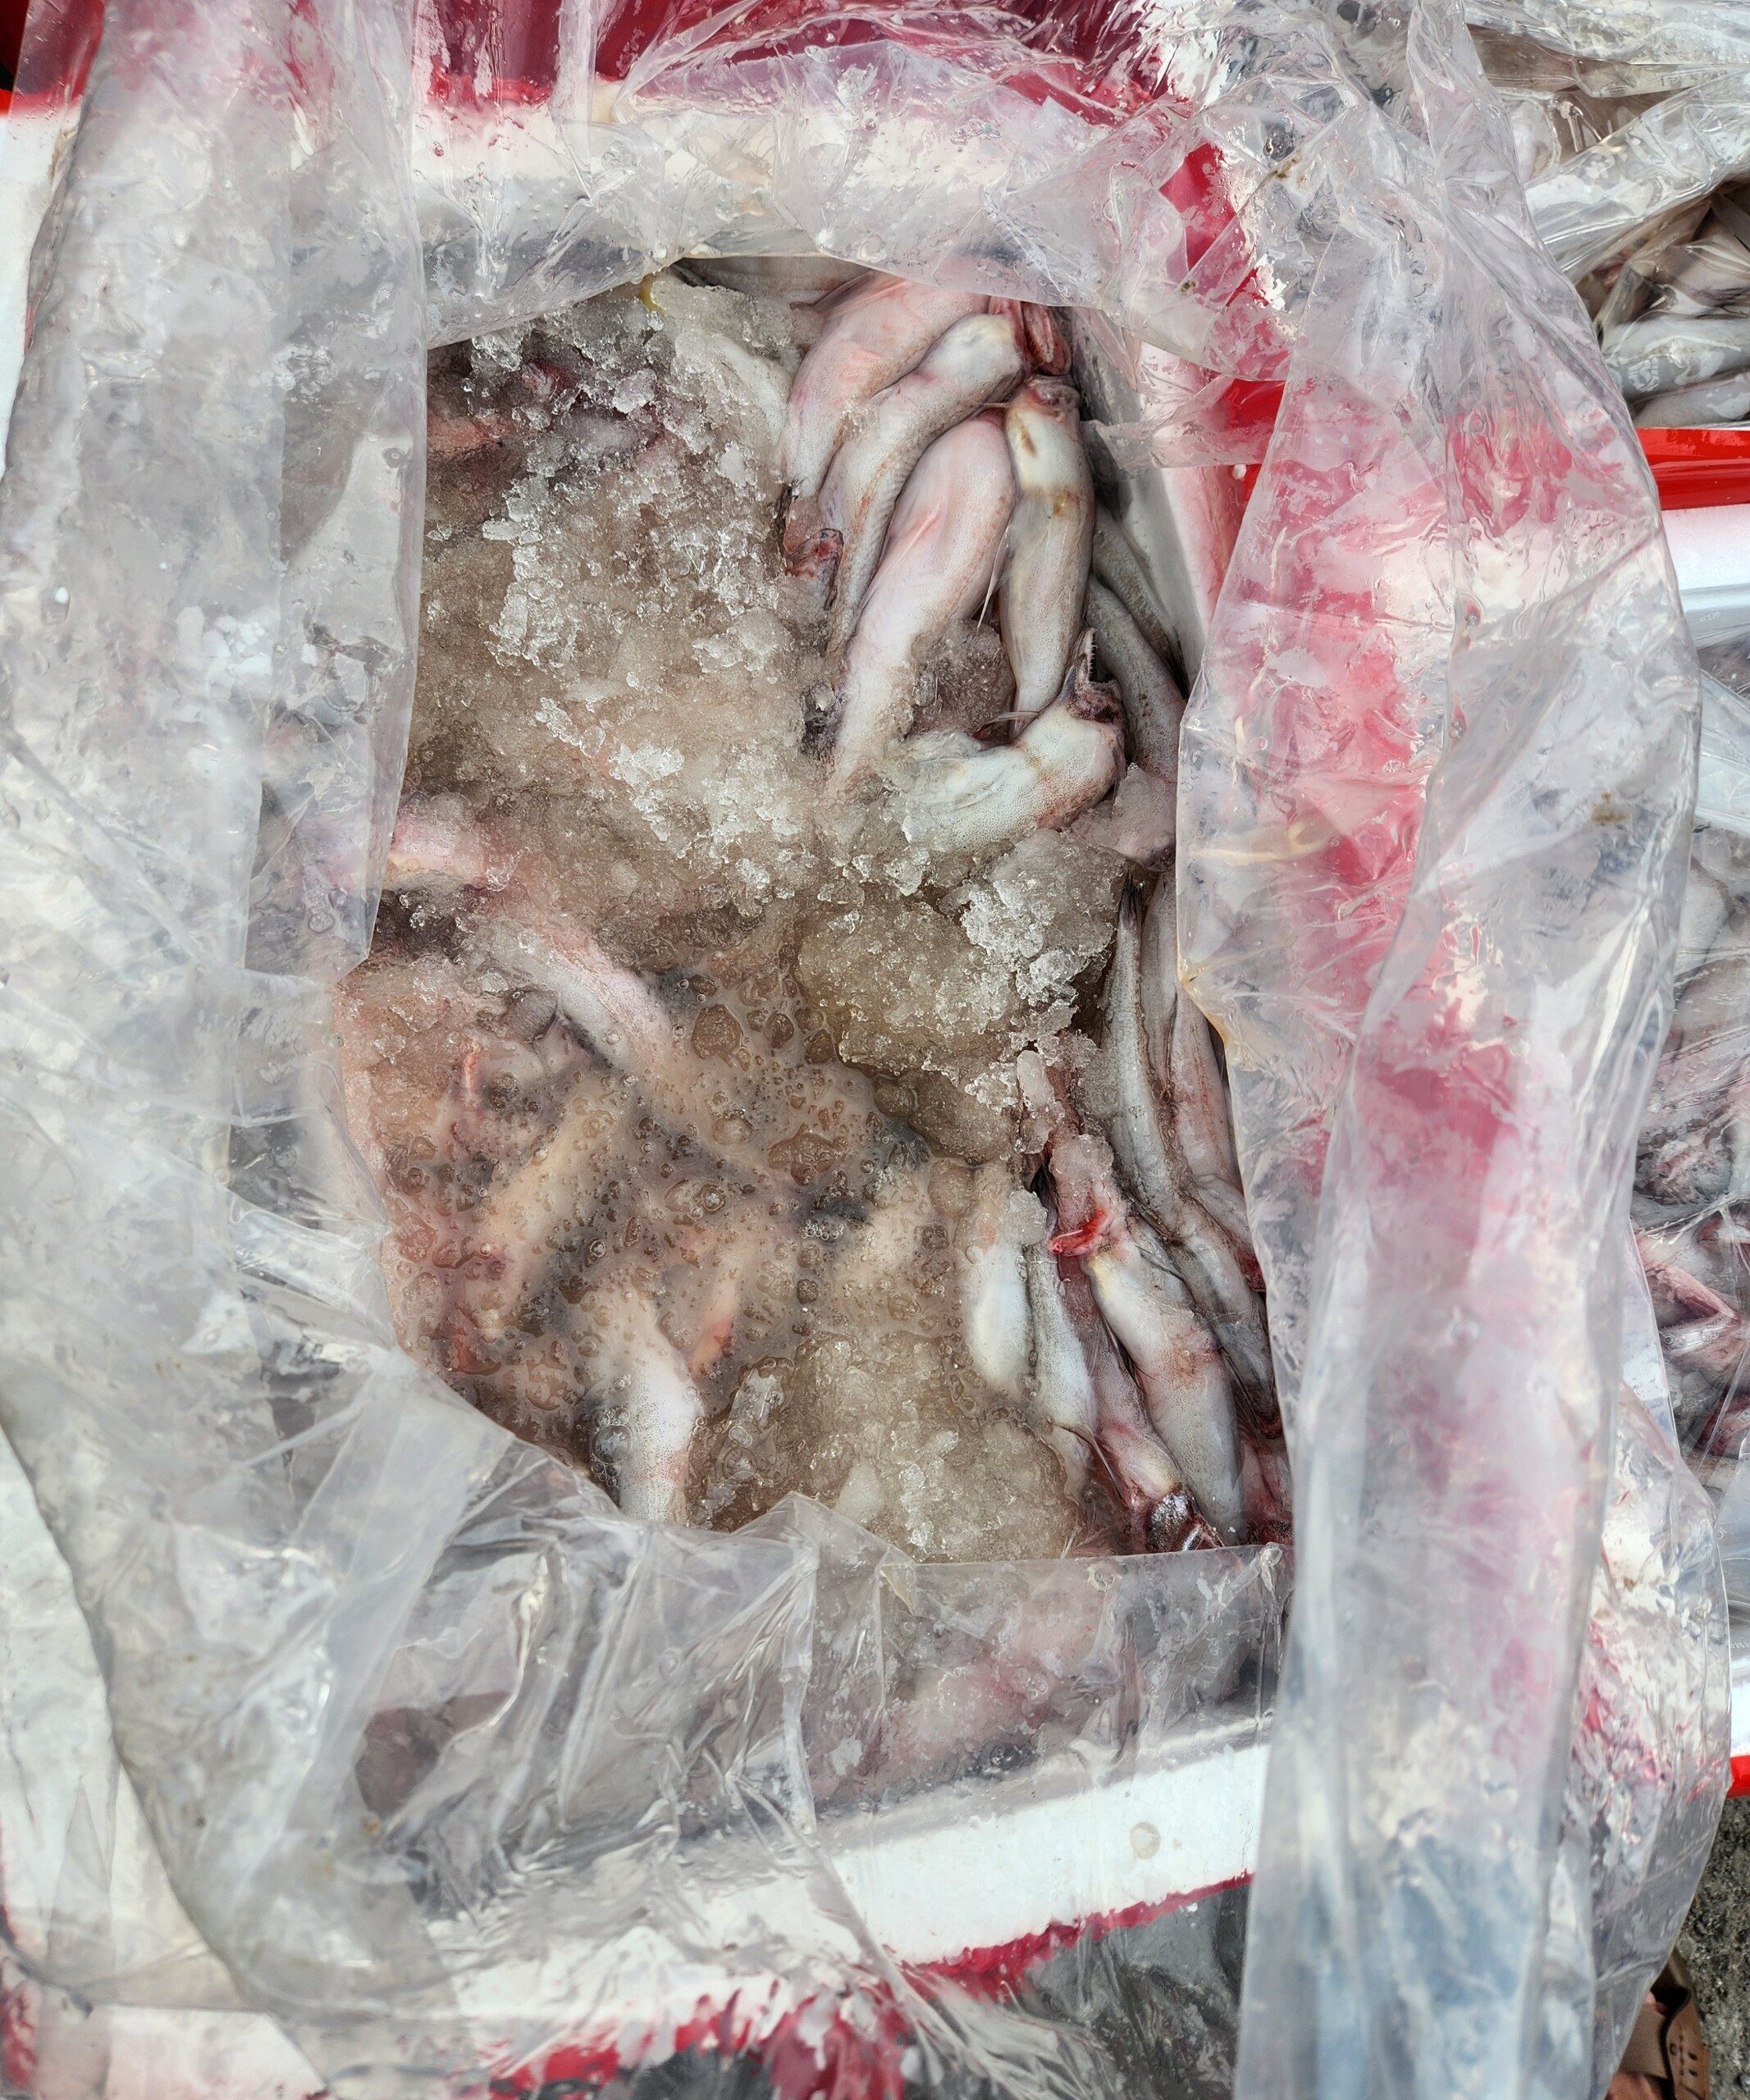 Lực lượng Quản lý thị trường Thanh Hoá vừa phát hiện 4,5 tấn cá khoai chứa chất foocmon. Một loại chất cấm sử dụng trong chế biến thực phẩm.